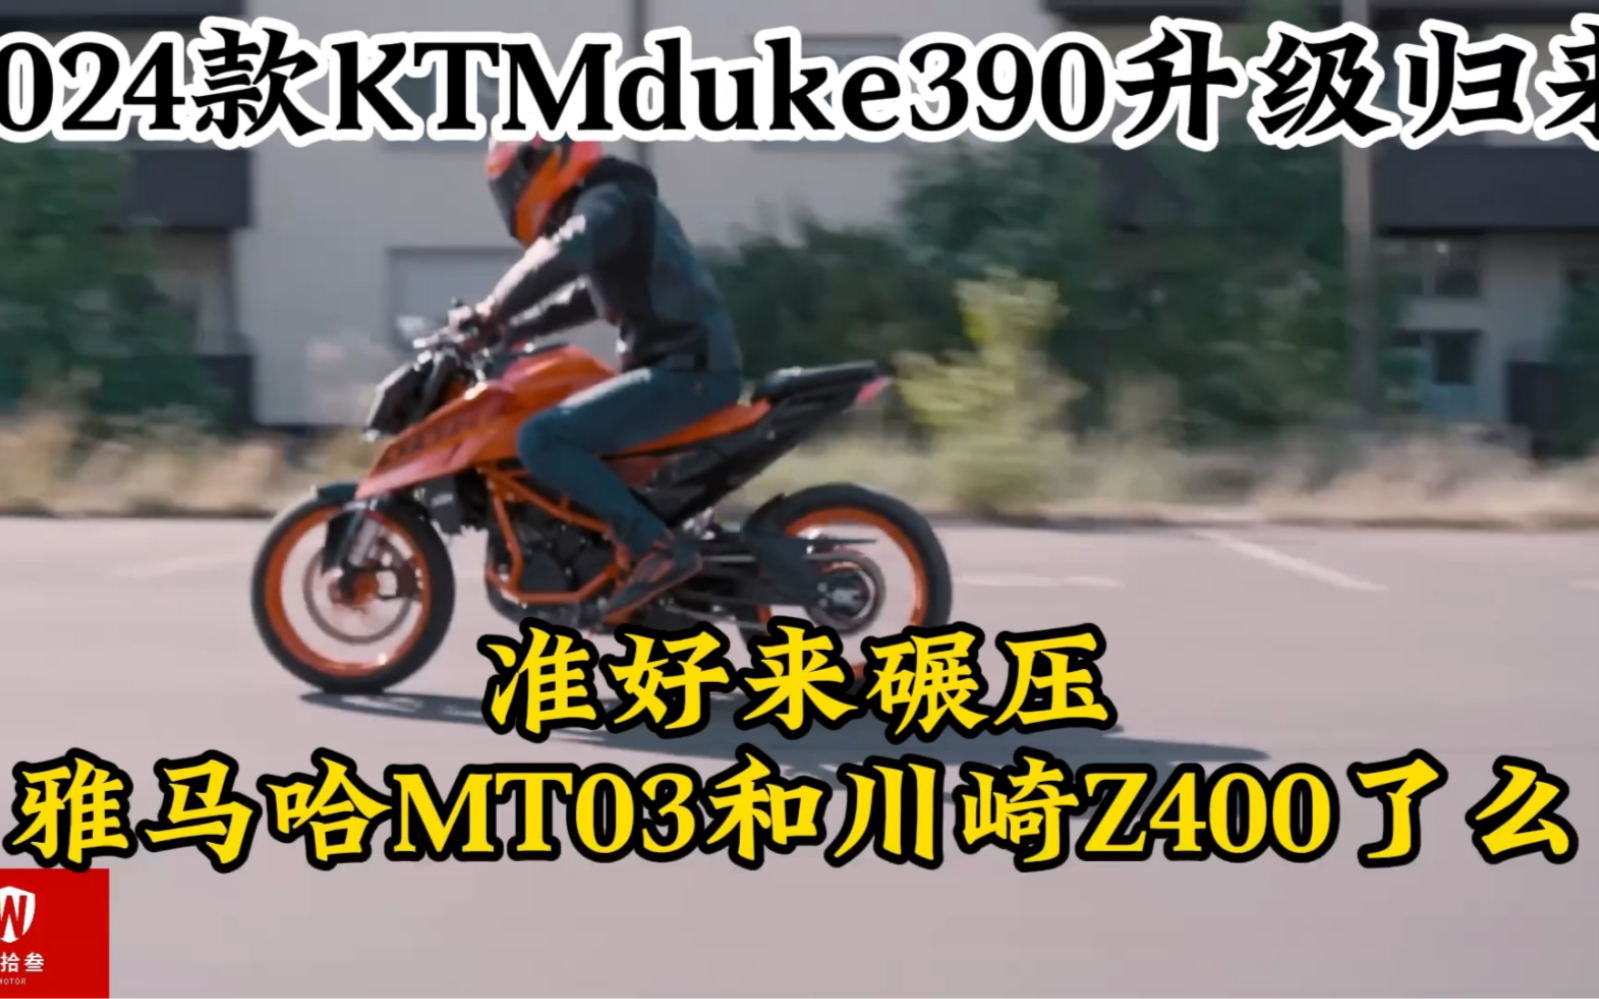 全新24款KTM duke390升级归来！更强的动力体重也增加不少！能否碾压雅马哈MT03与川崎Z400？